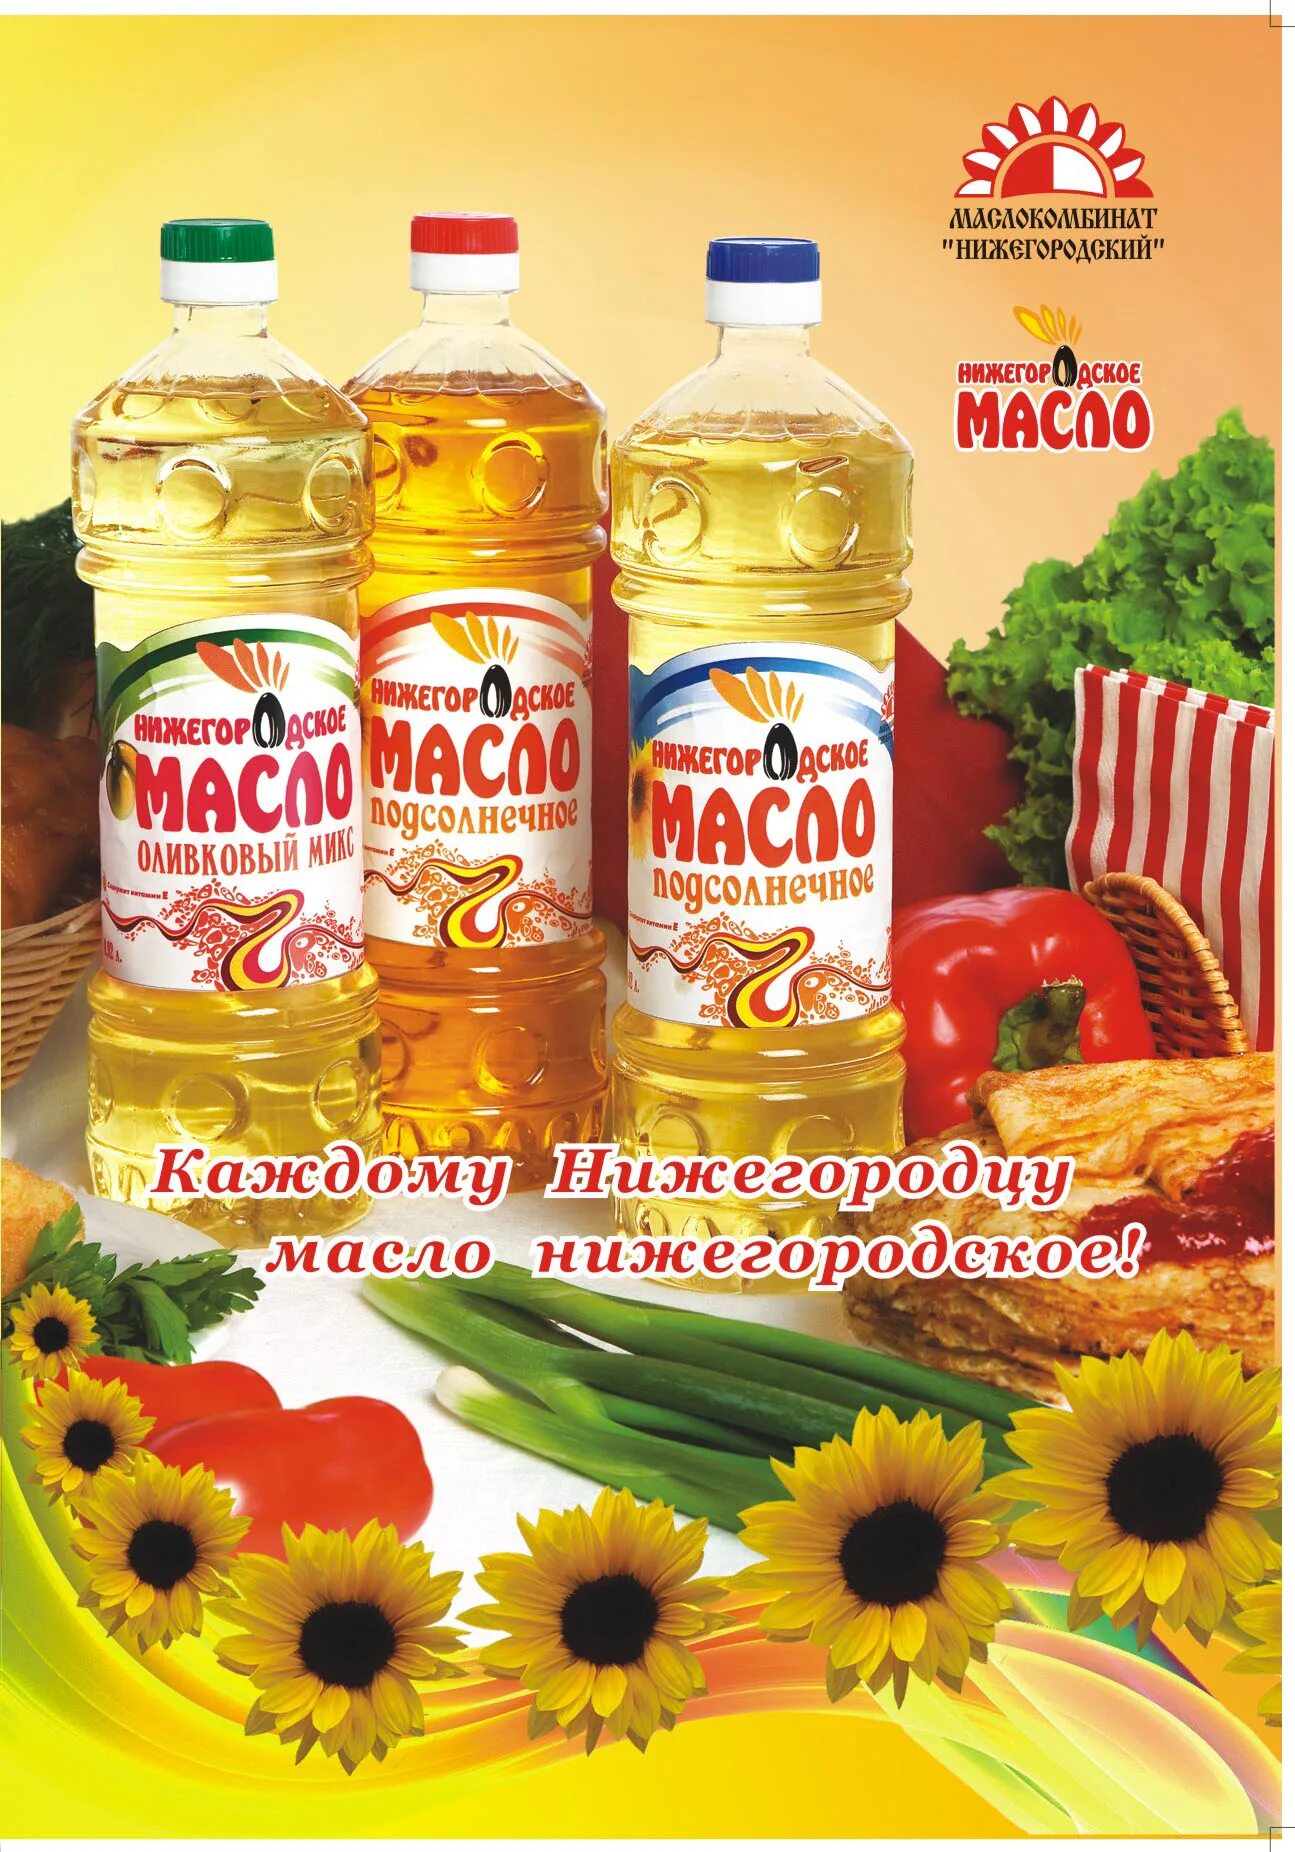 Марки растительного масла. Реклама подсолнечного масла. Реклама растительного масла. Нижегородское масло.